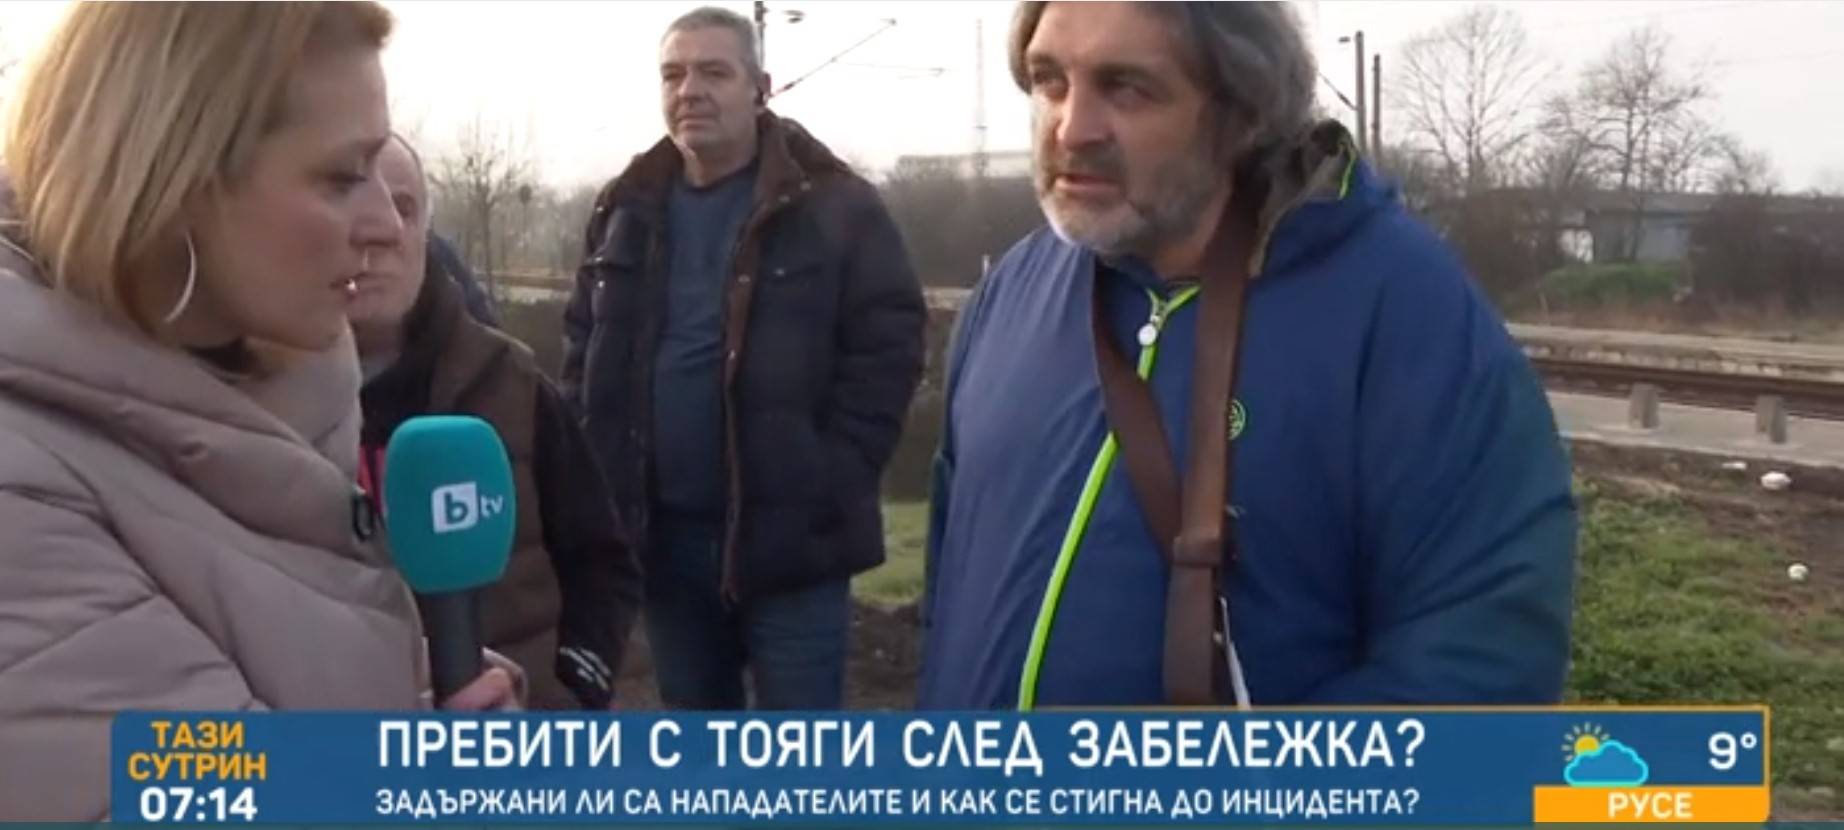 Цигани пребиха с тояги след забележка баща и син в Бургас 